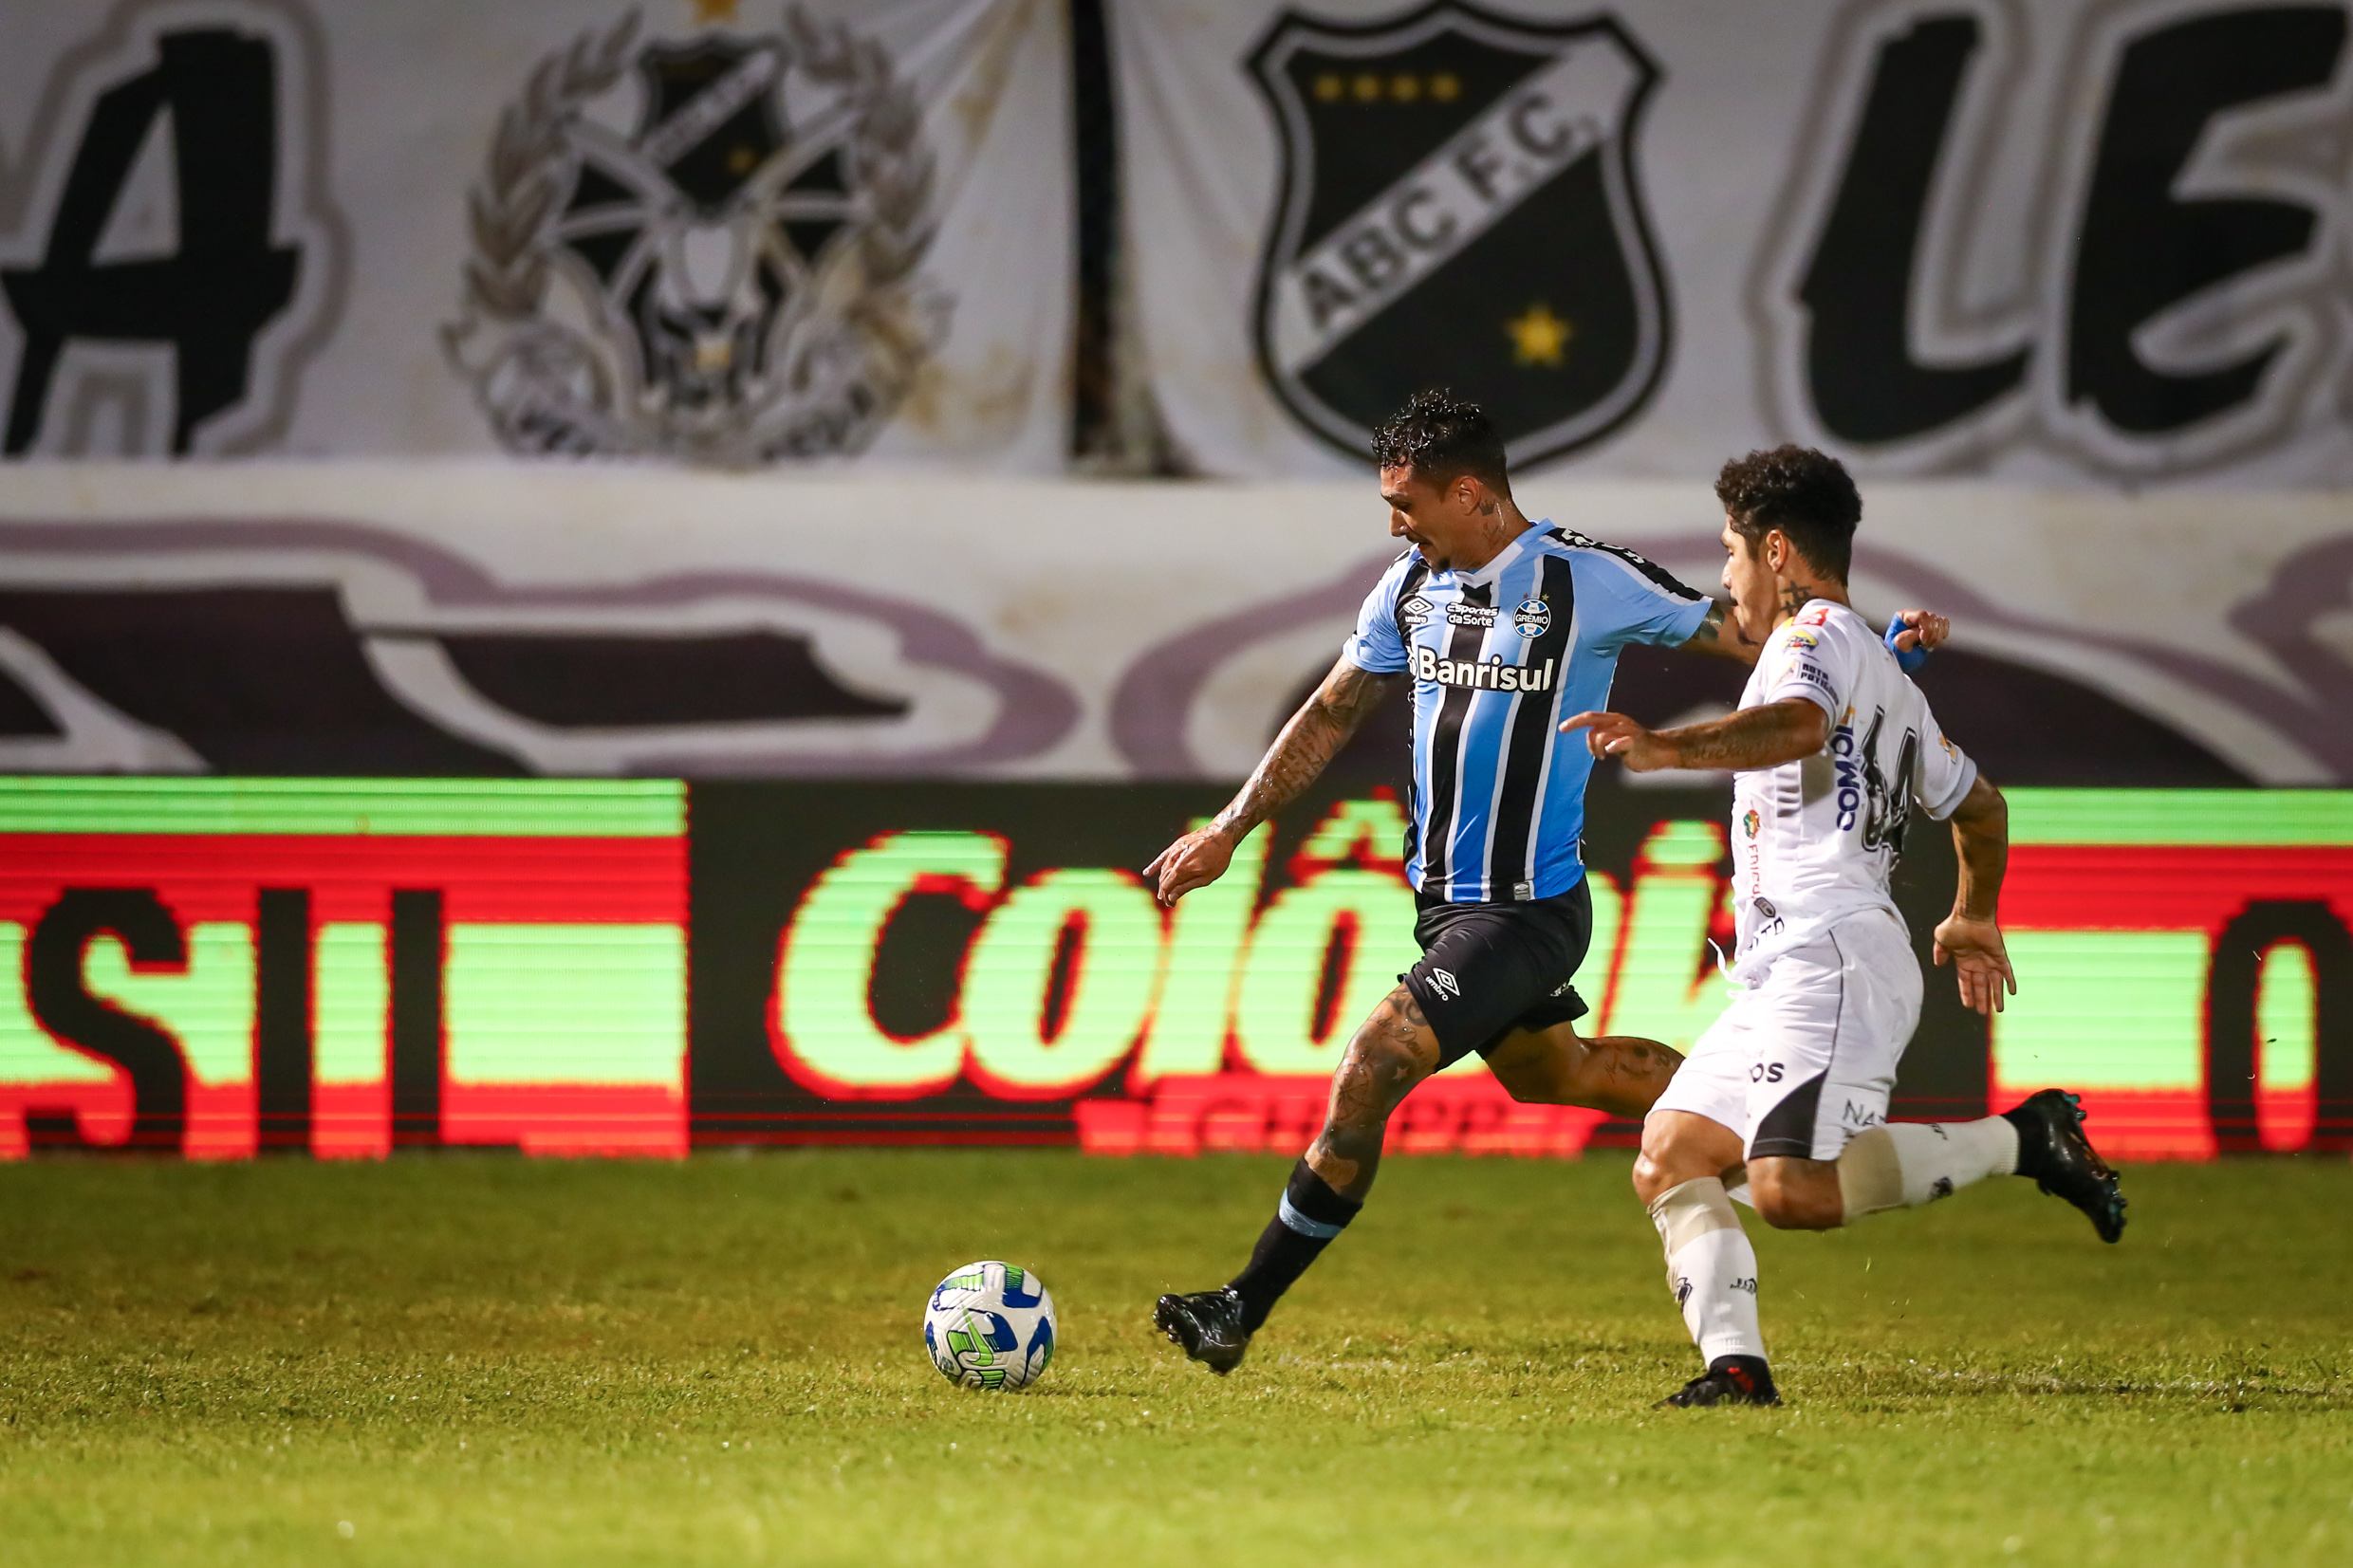 Grêmio vs ABC: A Clash of Competitors